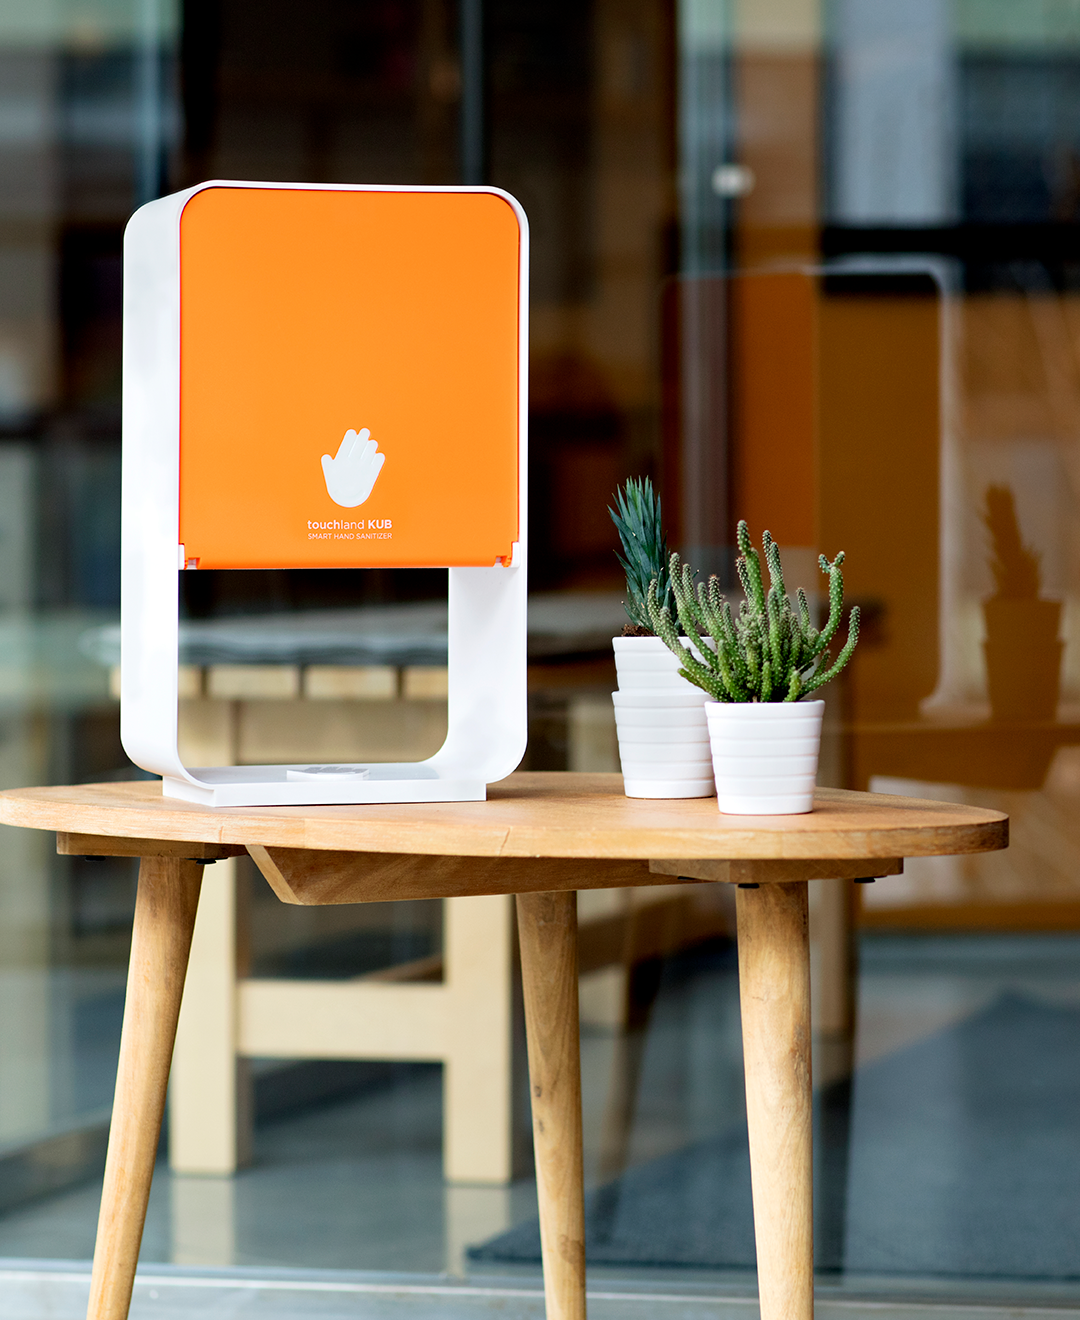 Orange kub dispenser on table outside office